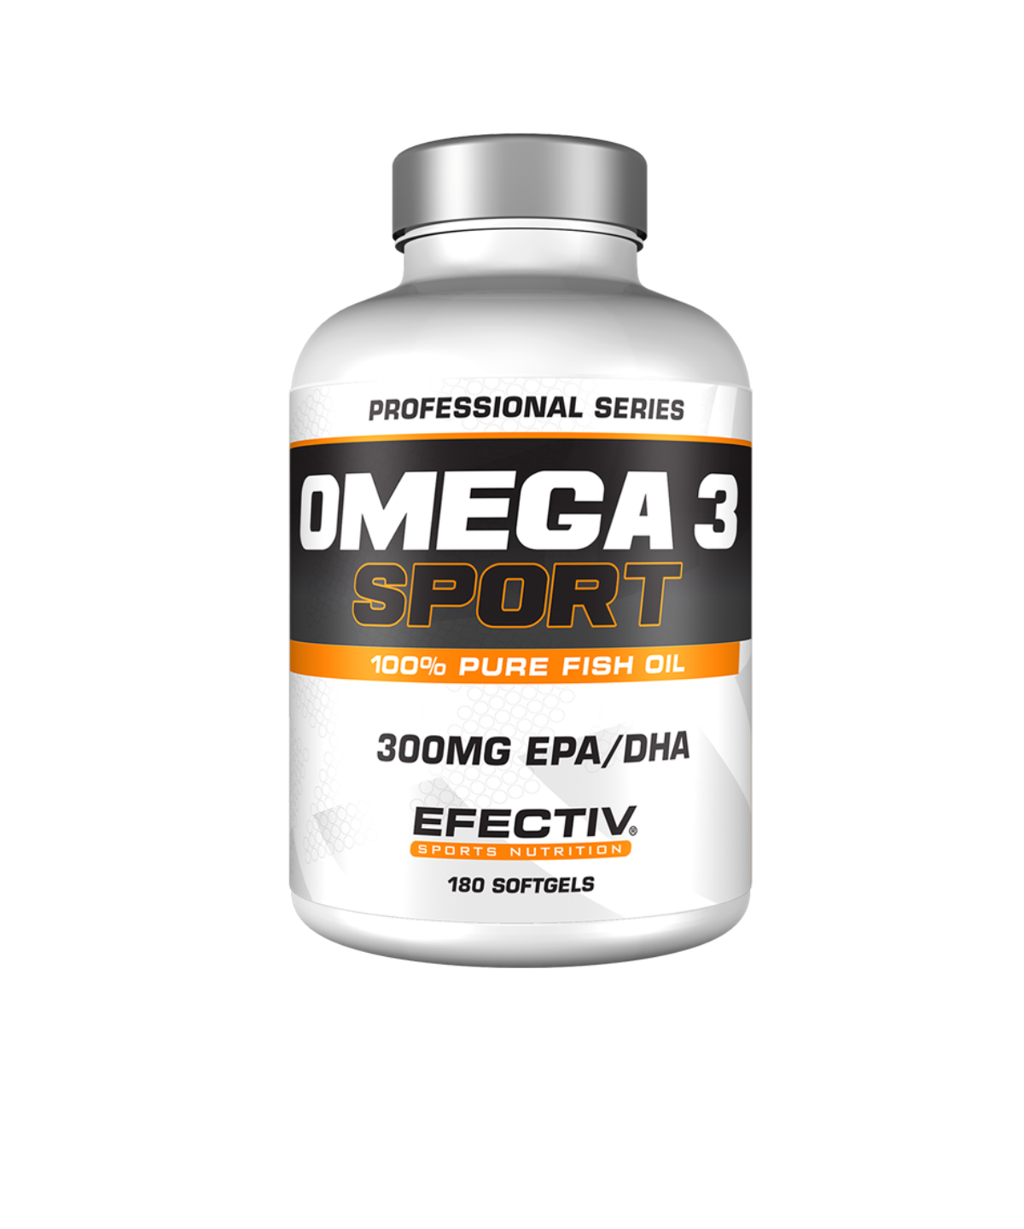 Omega 3 Sport